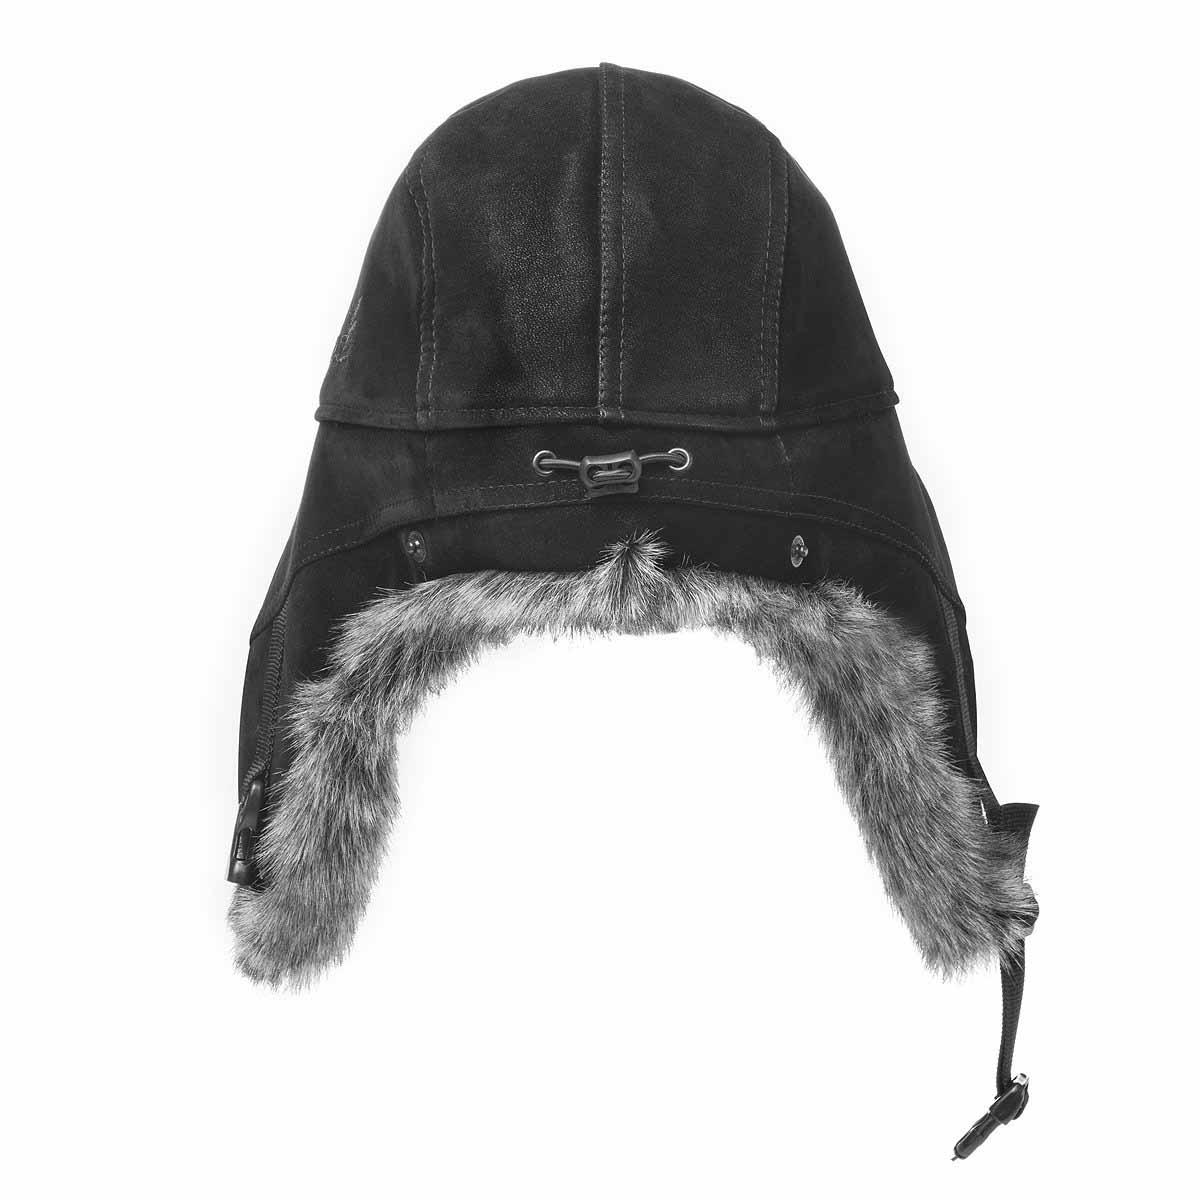 Tough Headwear Tough Headwear Trapper Hat with Faux Fur & Ear Flaps -  Ushanka Aviator Russian Hat